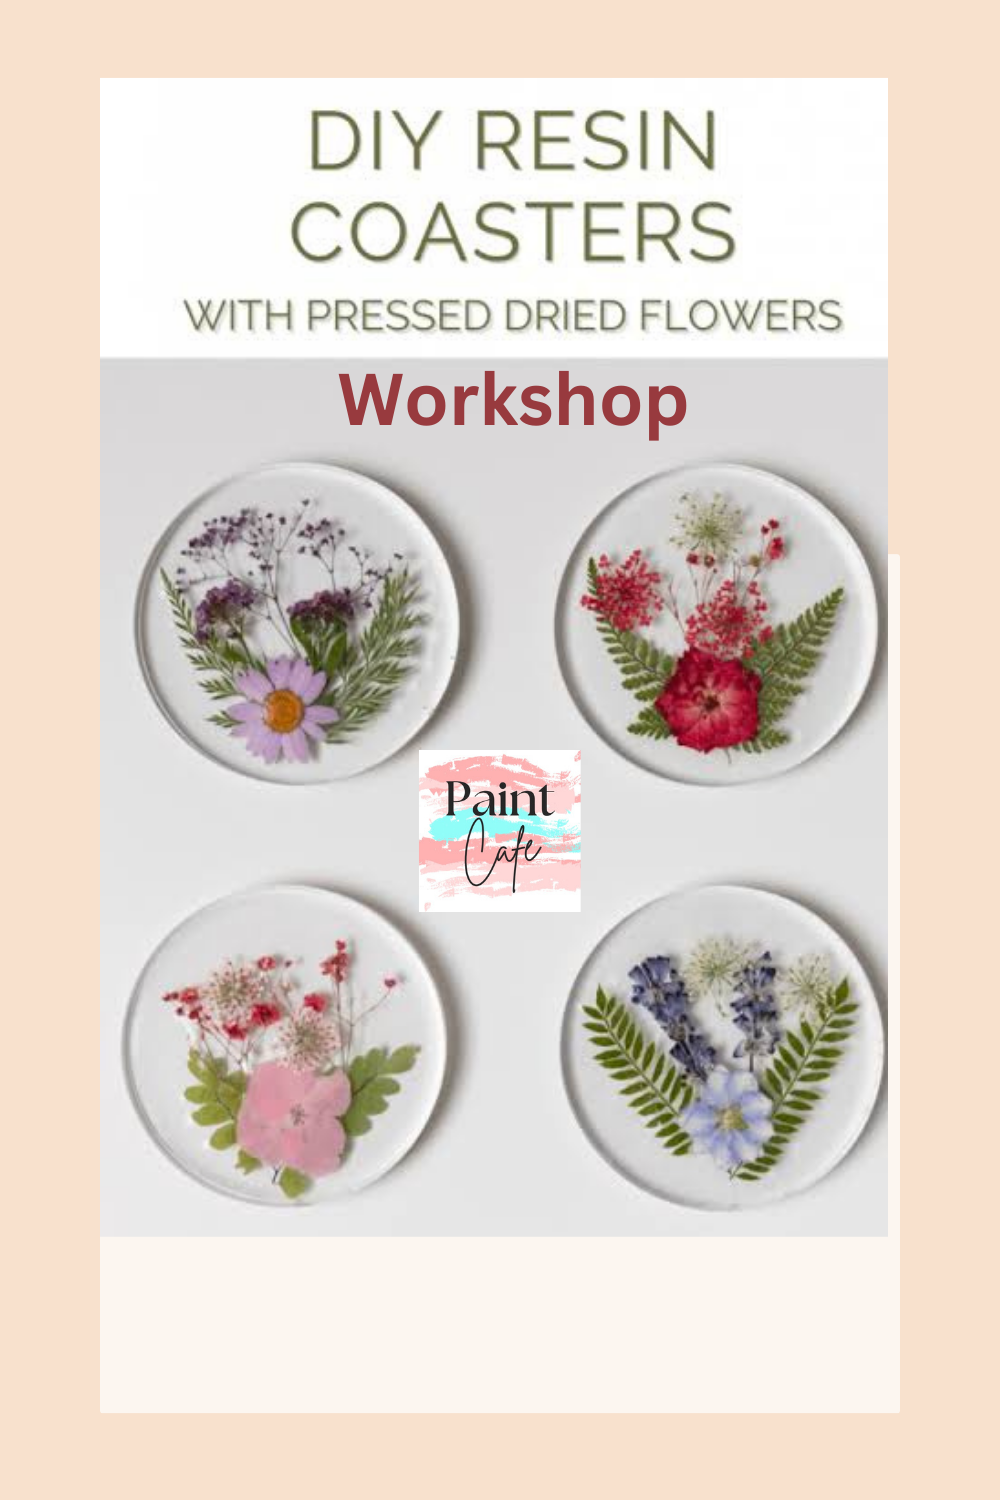 DIY Resin Coasters With Dried Pressed Flowers Workshop - Set of 4